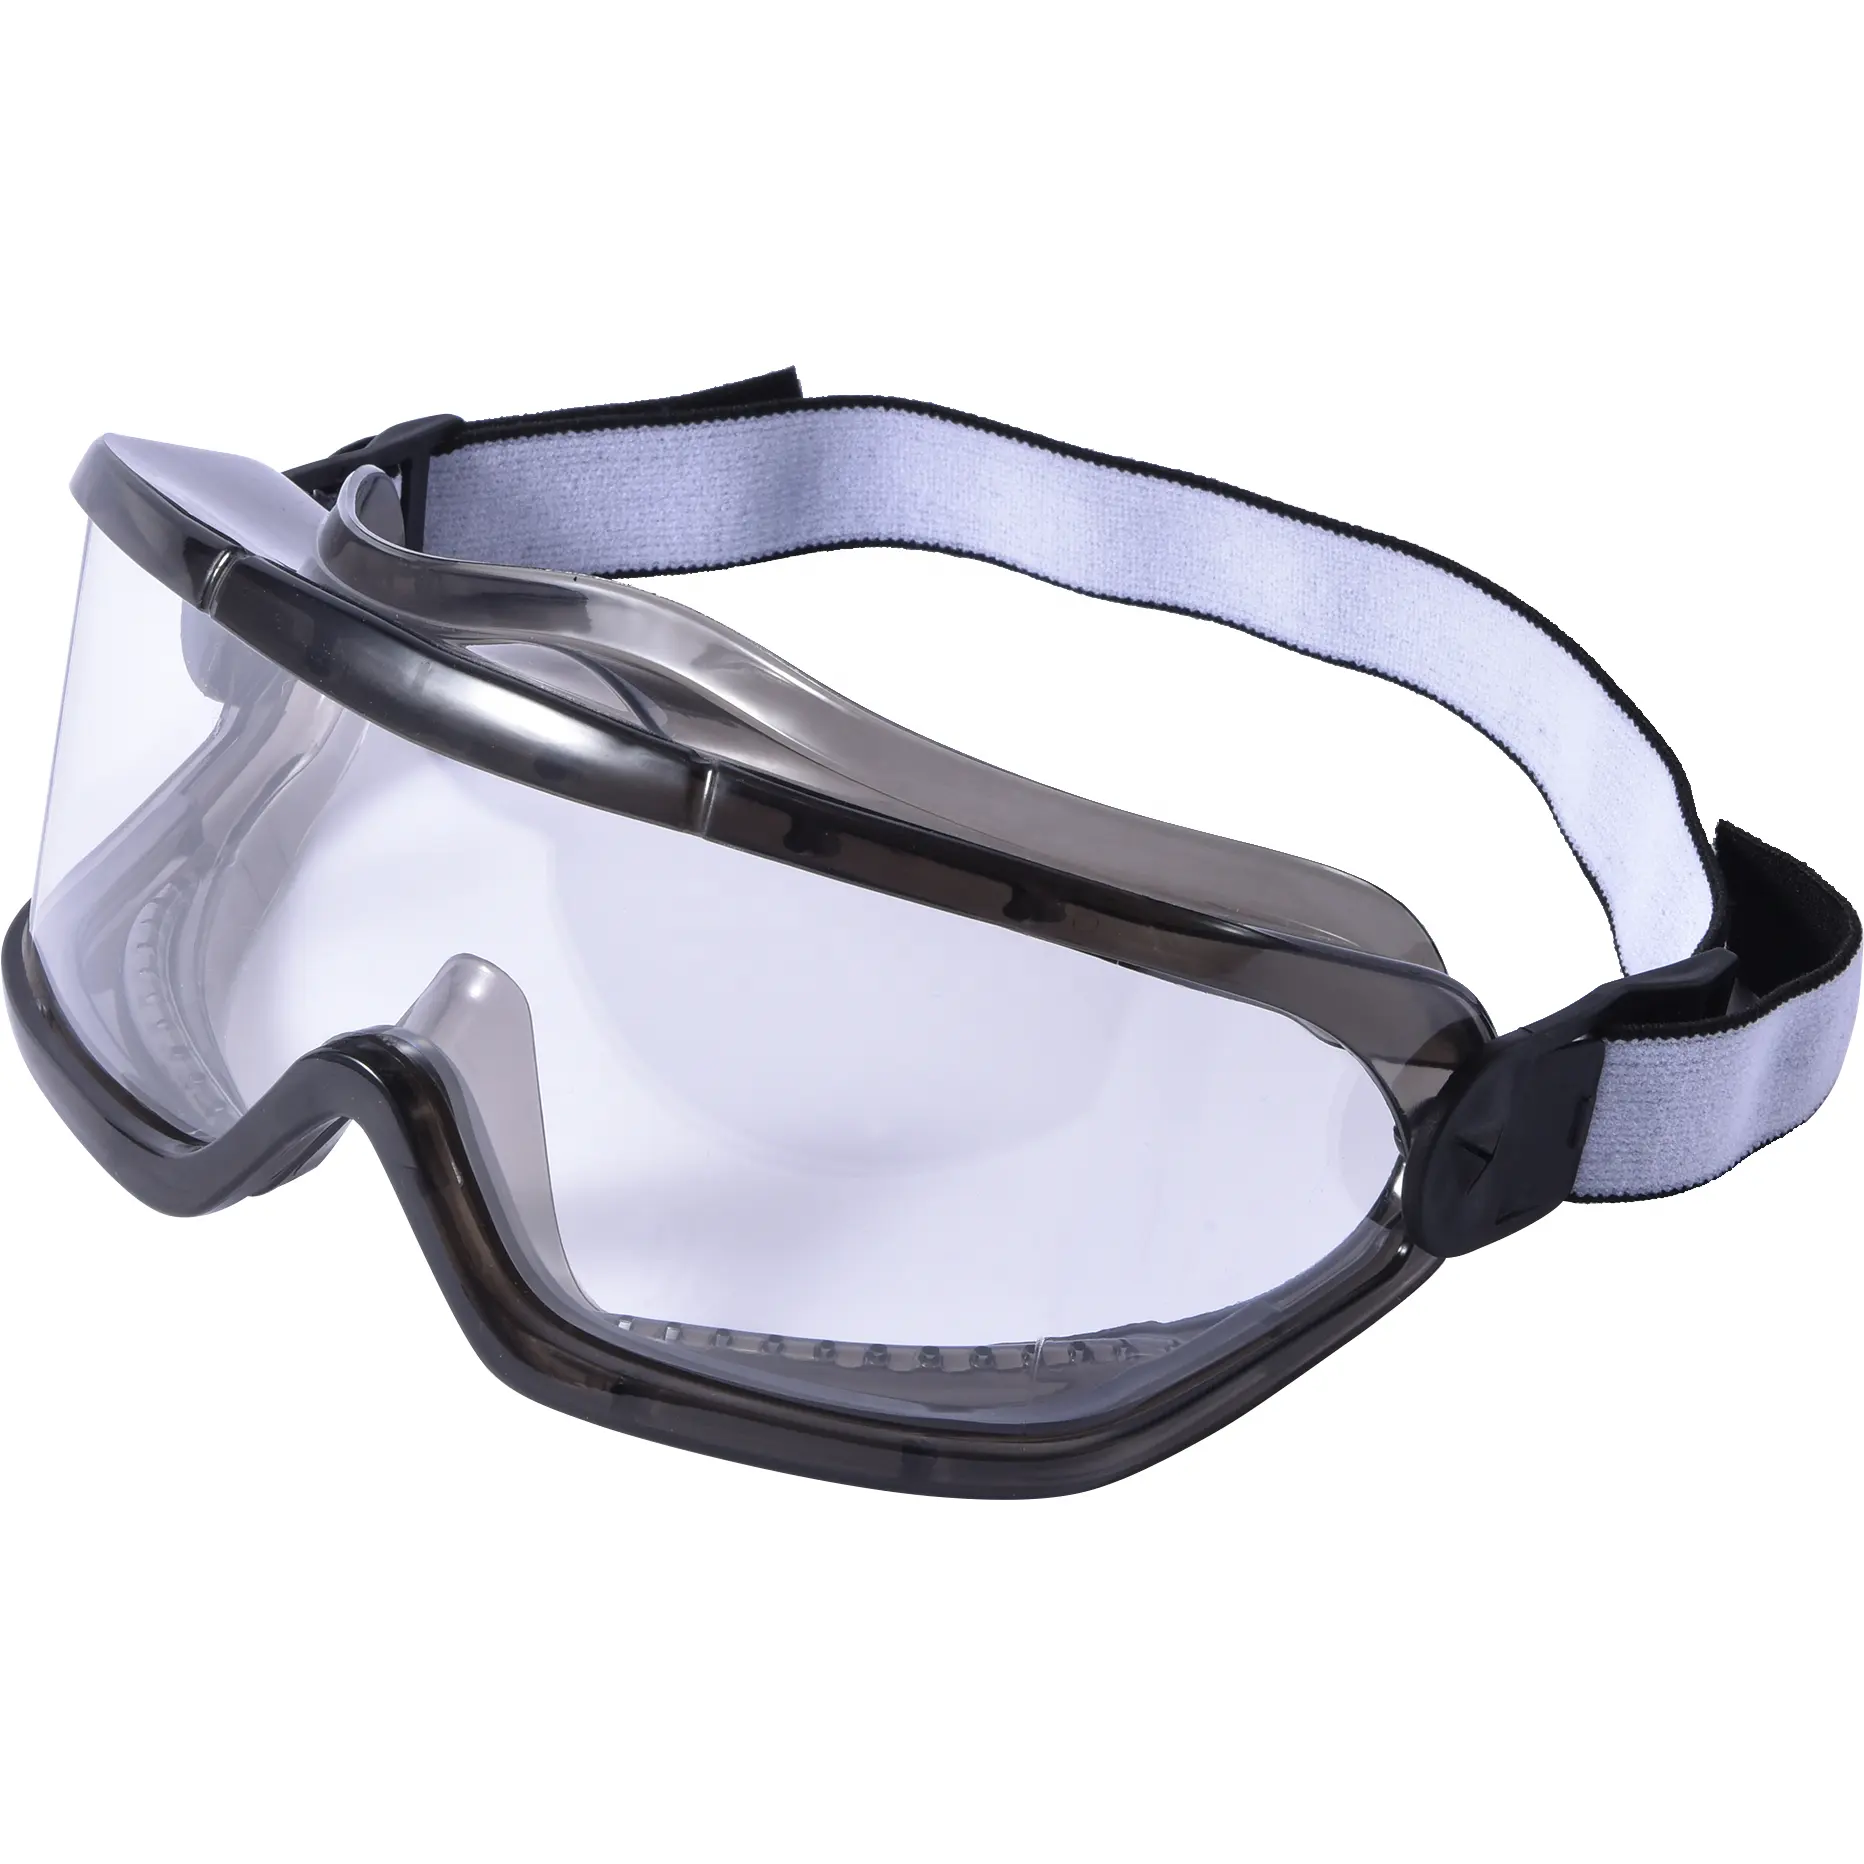 보호 작업을위한 YS-G046 범용 안전 안경 투명 와이드 비전 풀 뷰 안전 고글 투명 렌즈